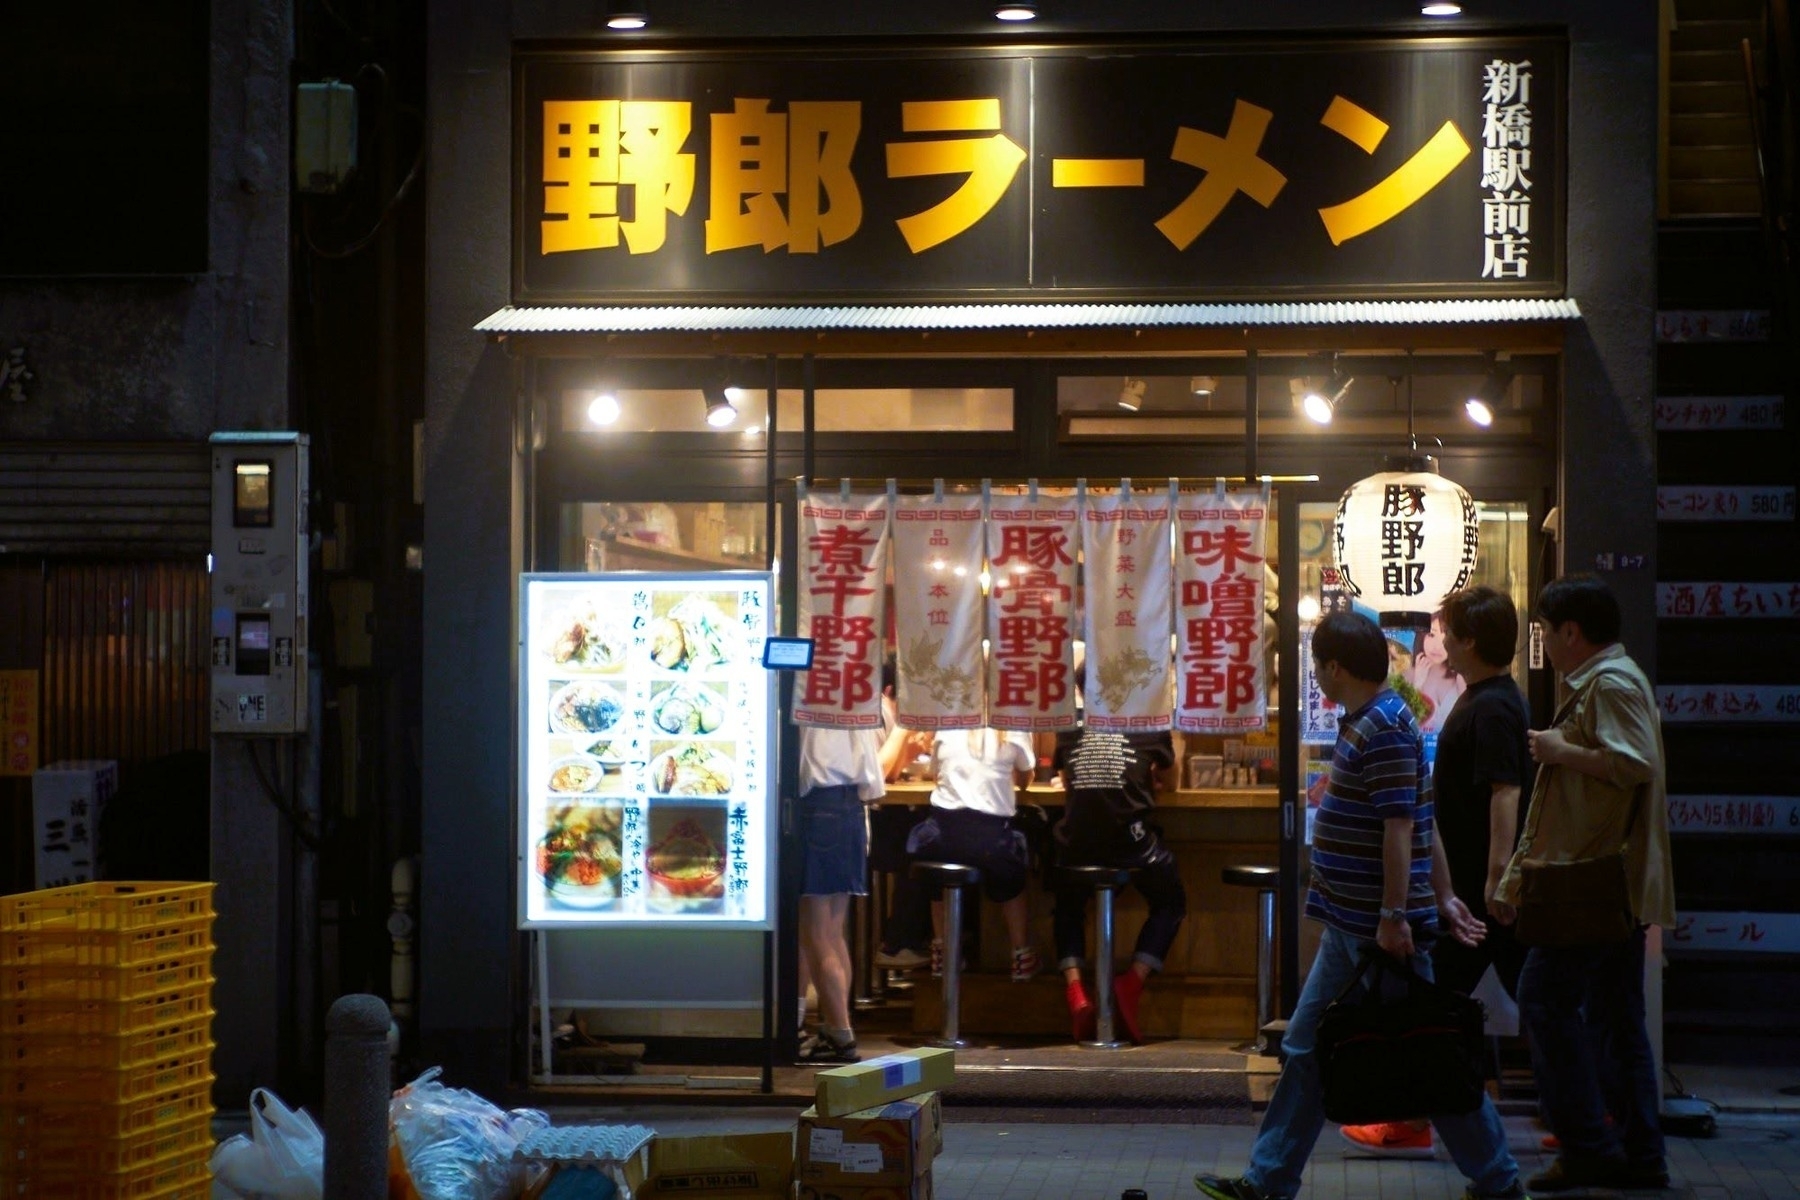 Photo of yarou ramen at night in Shimbashi